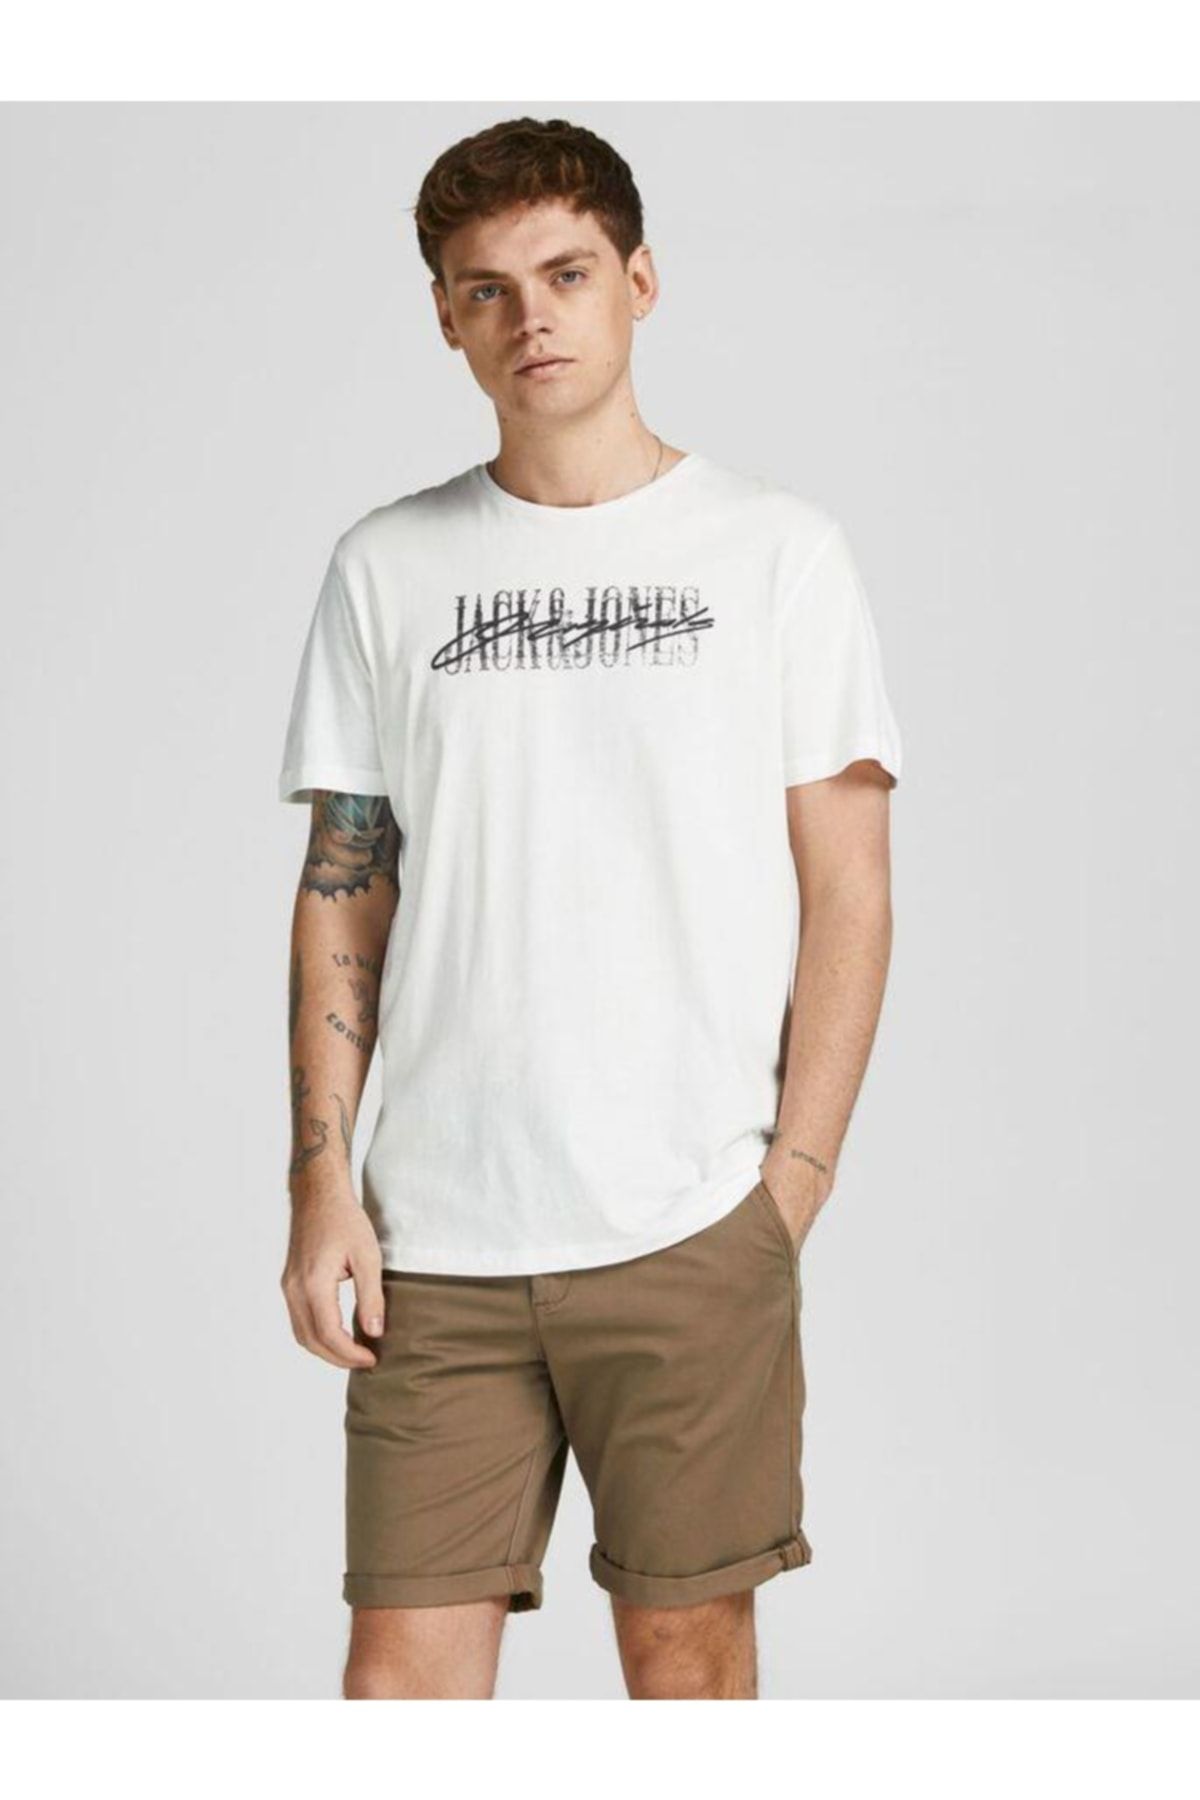 تی شرت مردانه سفید جک اند جونز Jack & Jones (برند دانمارک)